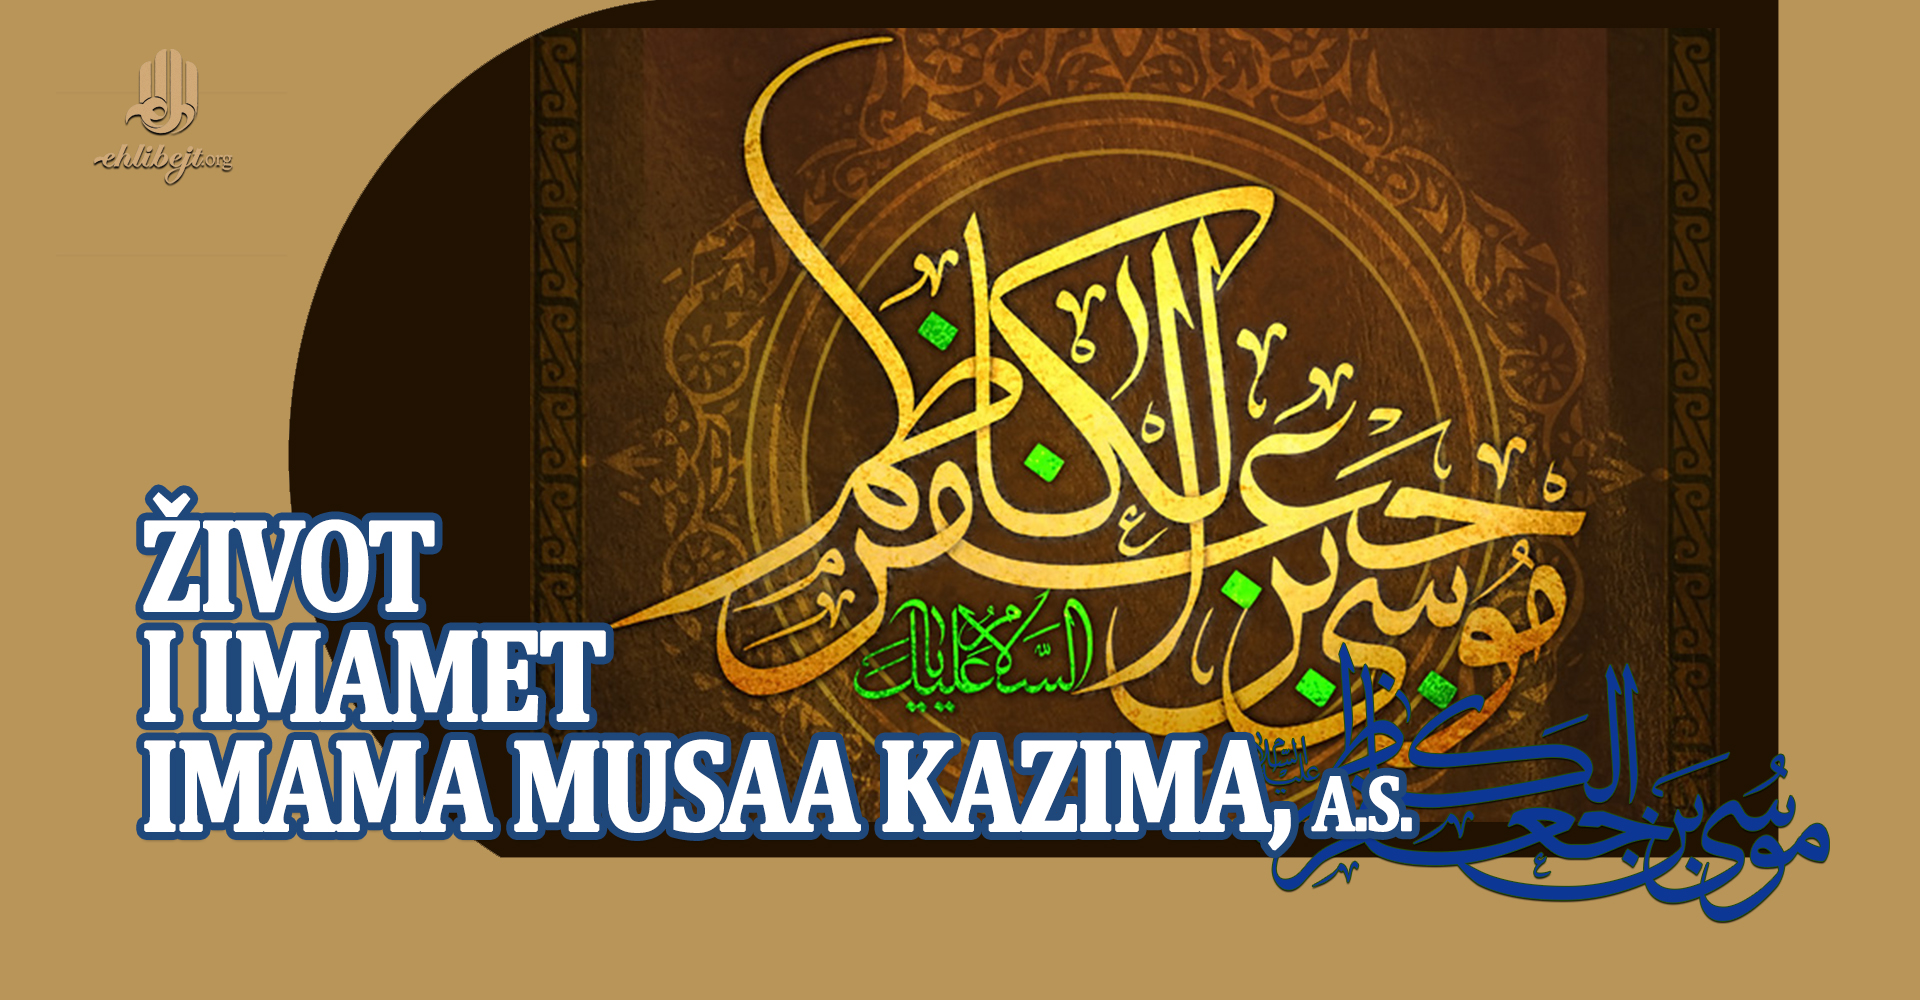 Život i imamet Imama Musaa Kazima, a.s.